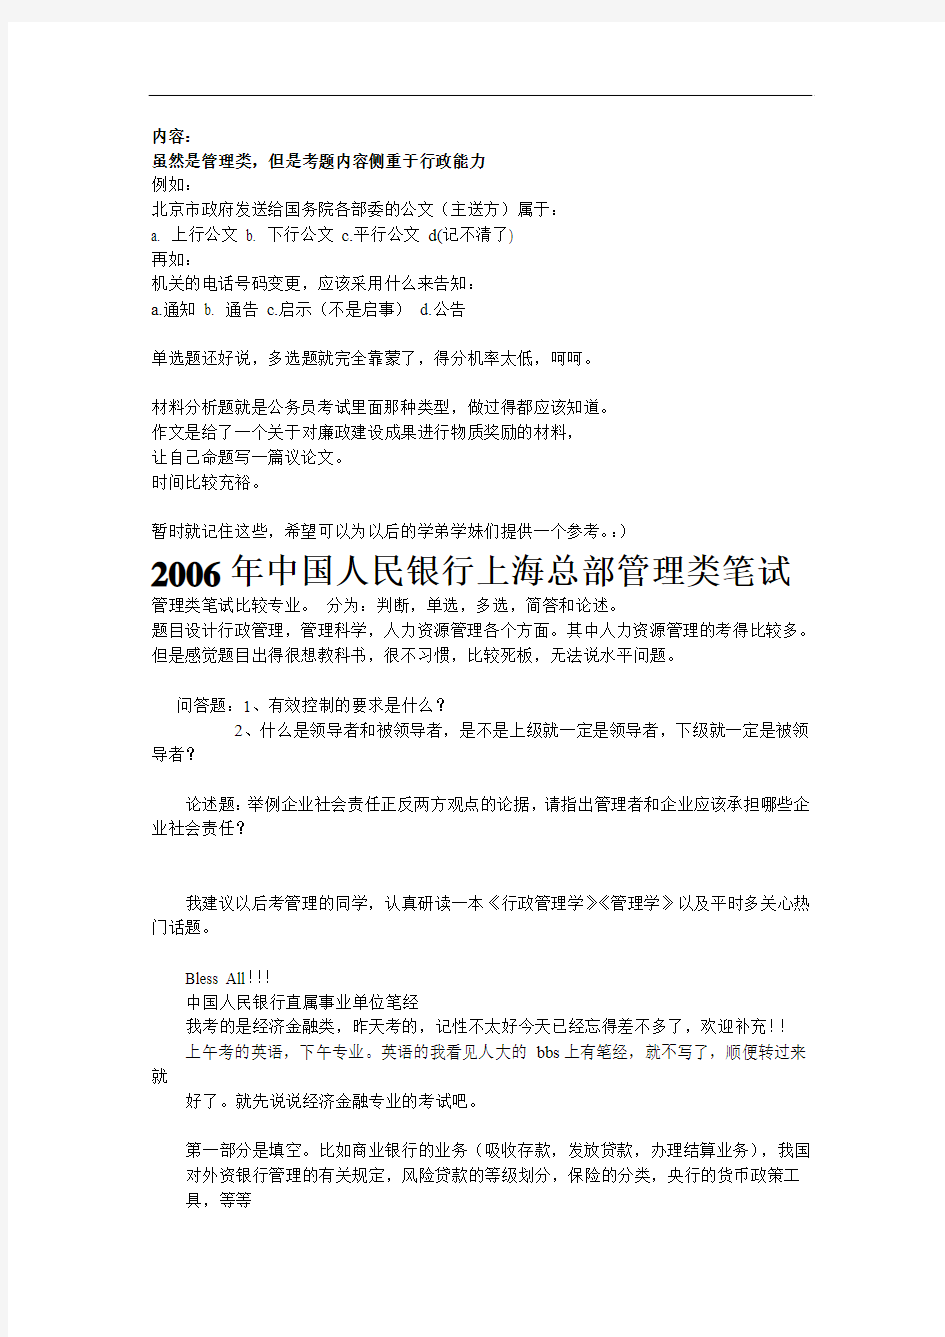 euaccry中国_人民银行2007招考笔试(管理类、经济金融,计算机、会计等)